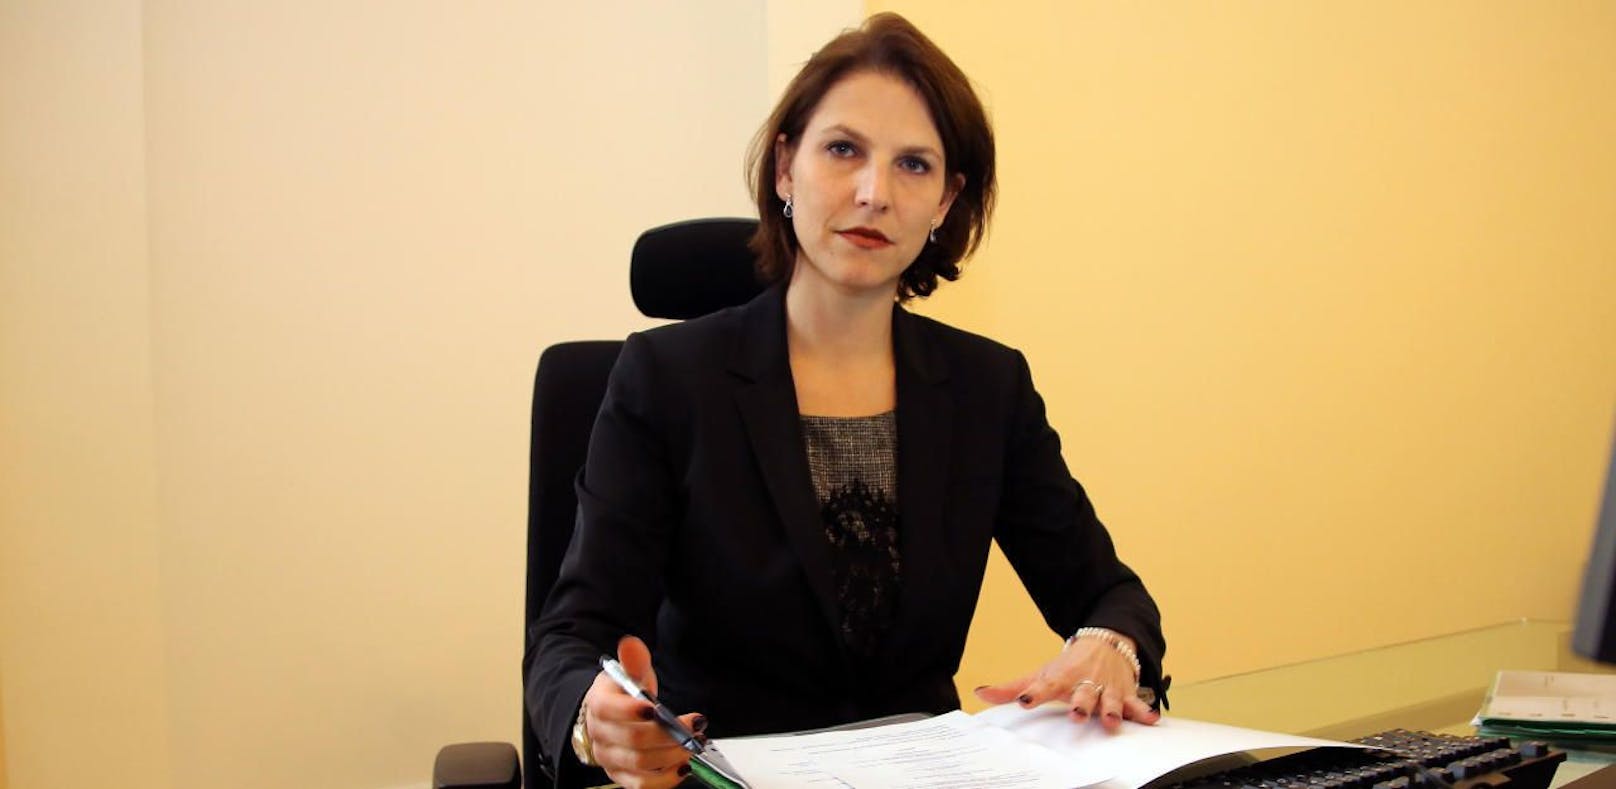 Karoline Edtstadler (ÖVP) ist seit dem Dezember 2017 Staatssekretärin im Bundesministerium für Inneres.